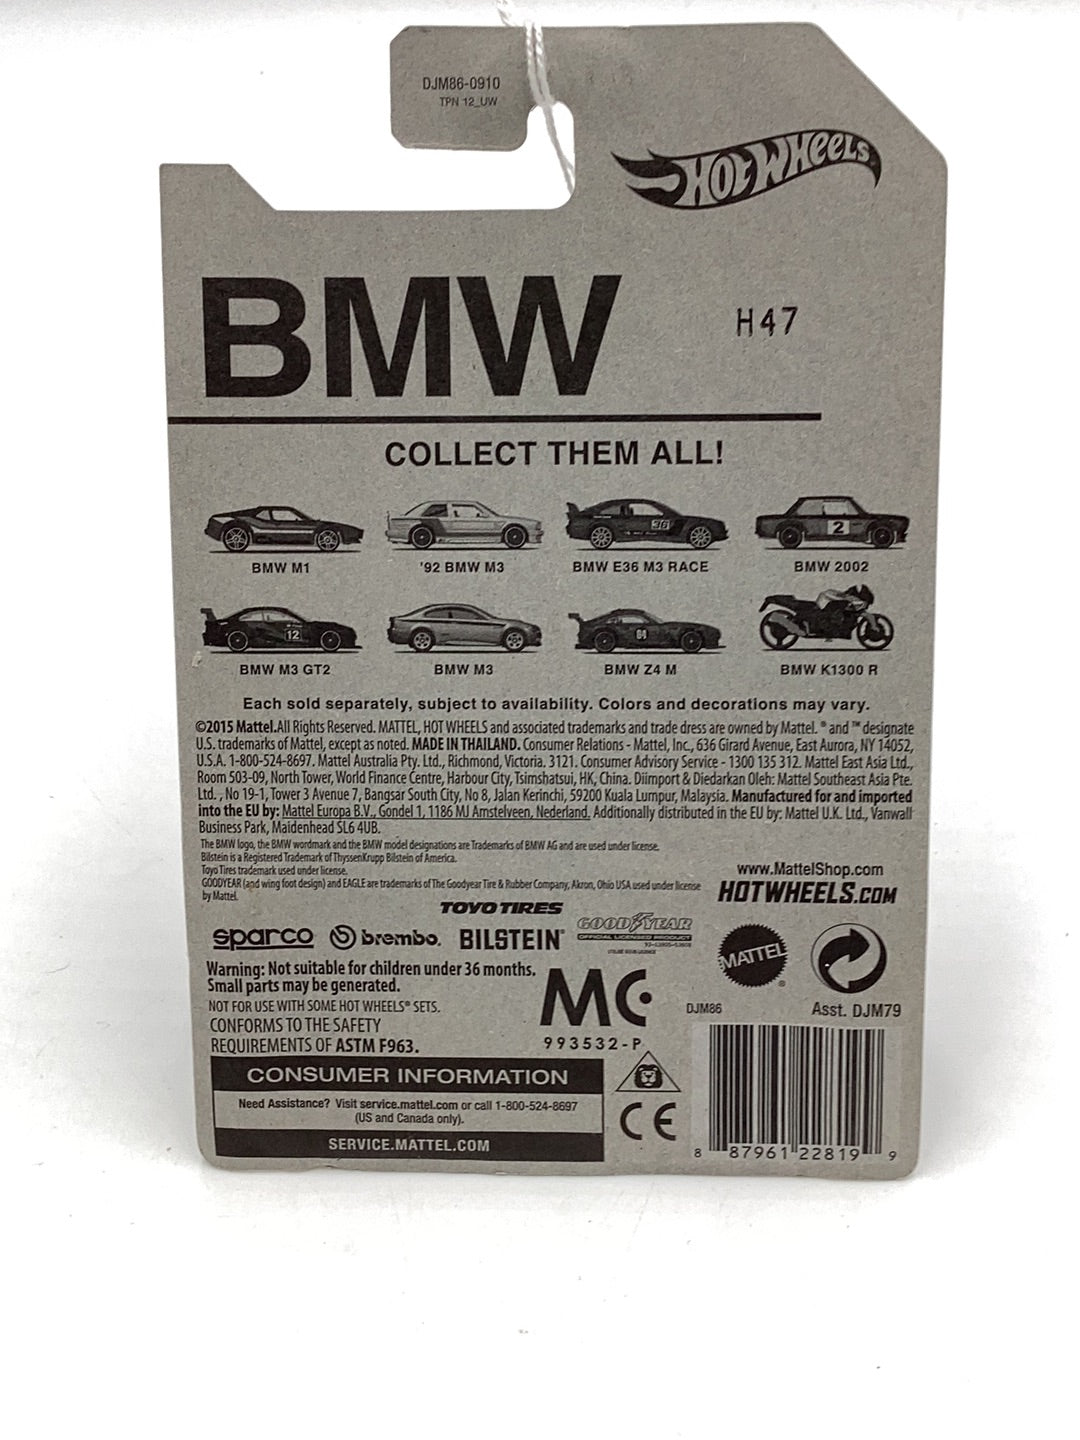 Hot wheels BMW series BMW Z4 M Walmart exclusive 7/8 151C